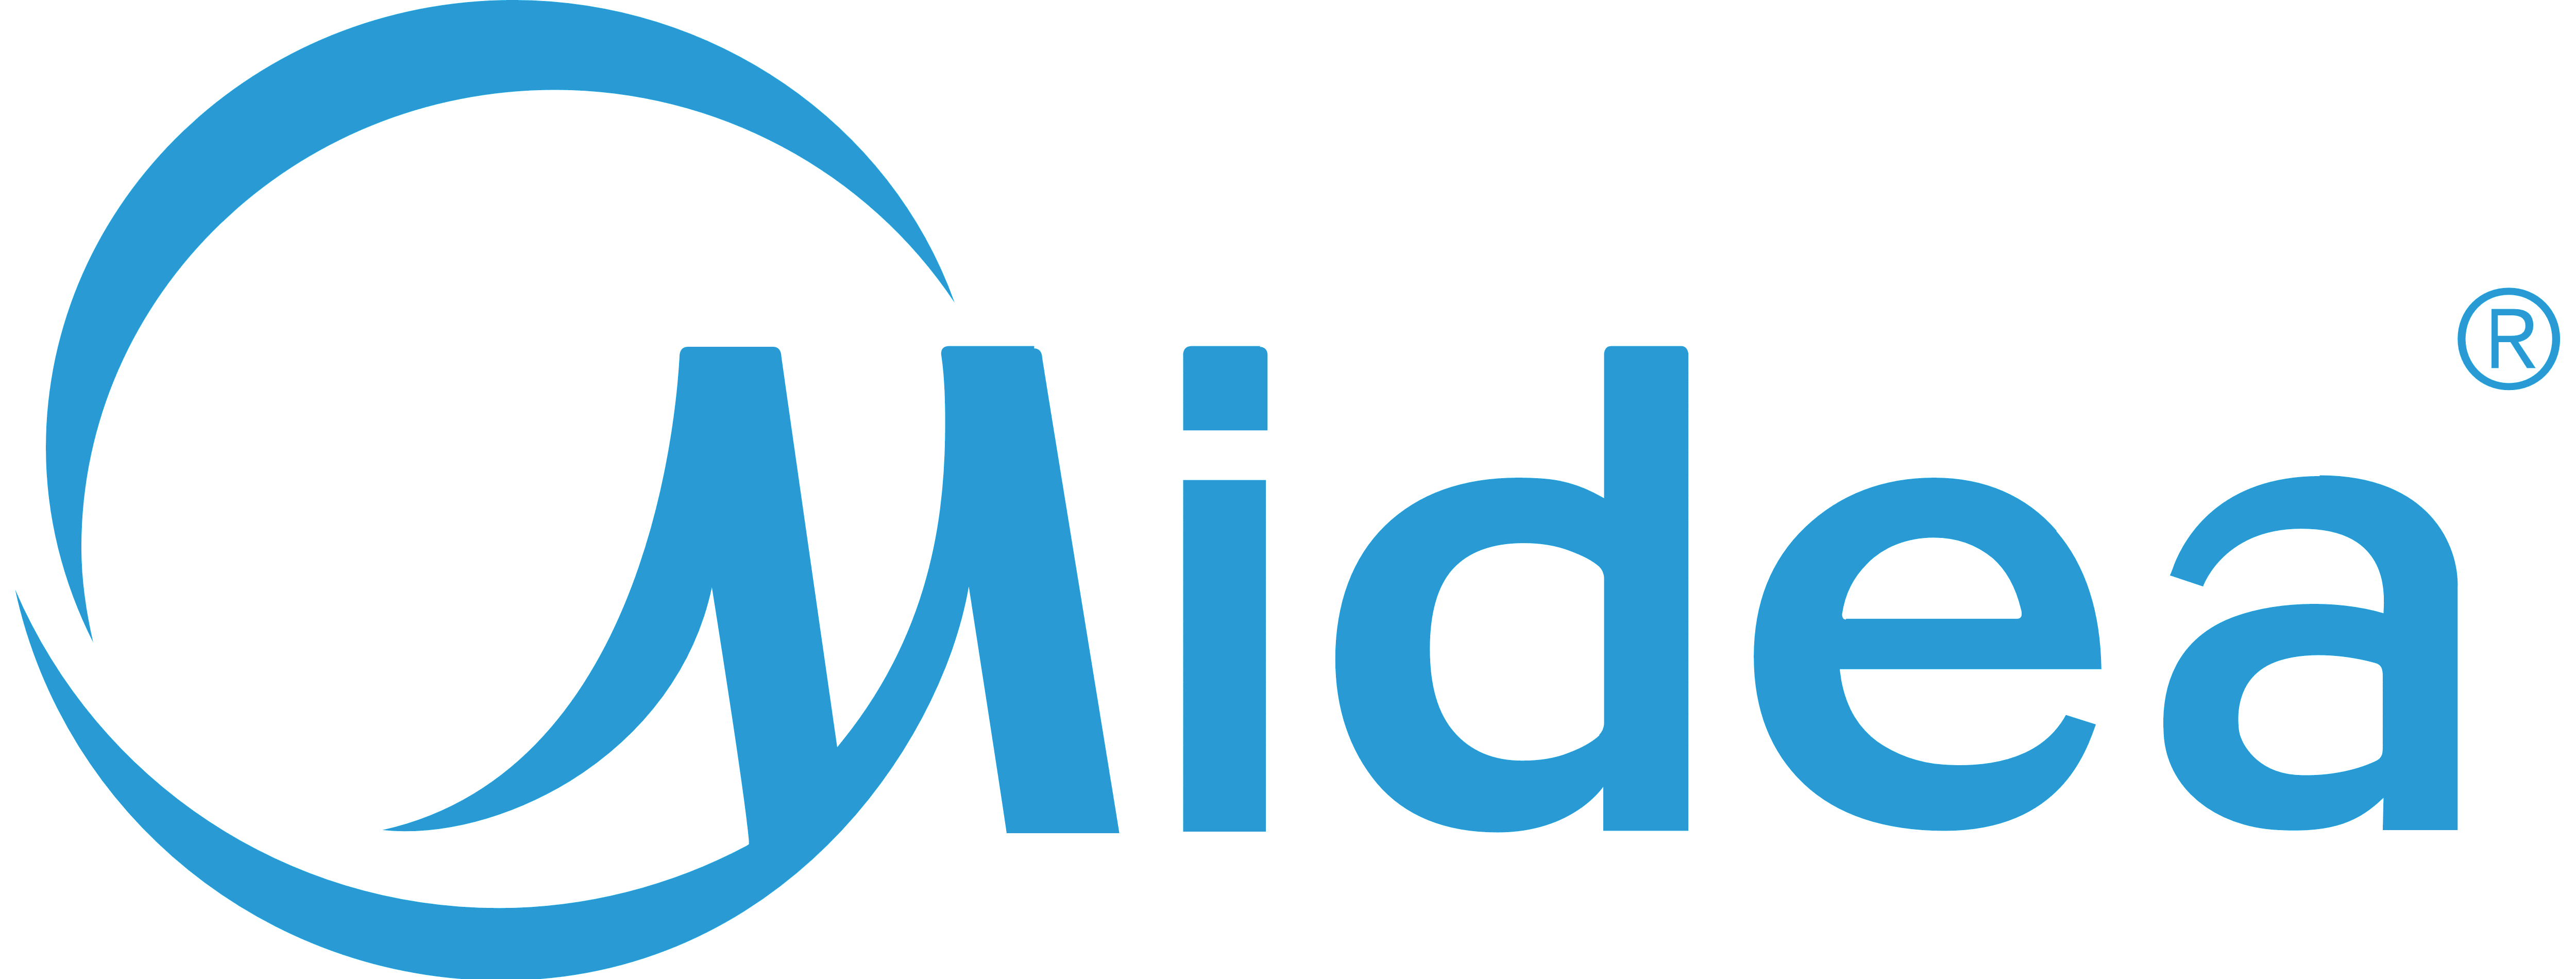 Midea_logo.png